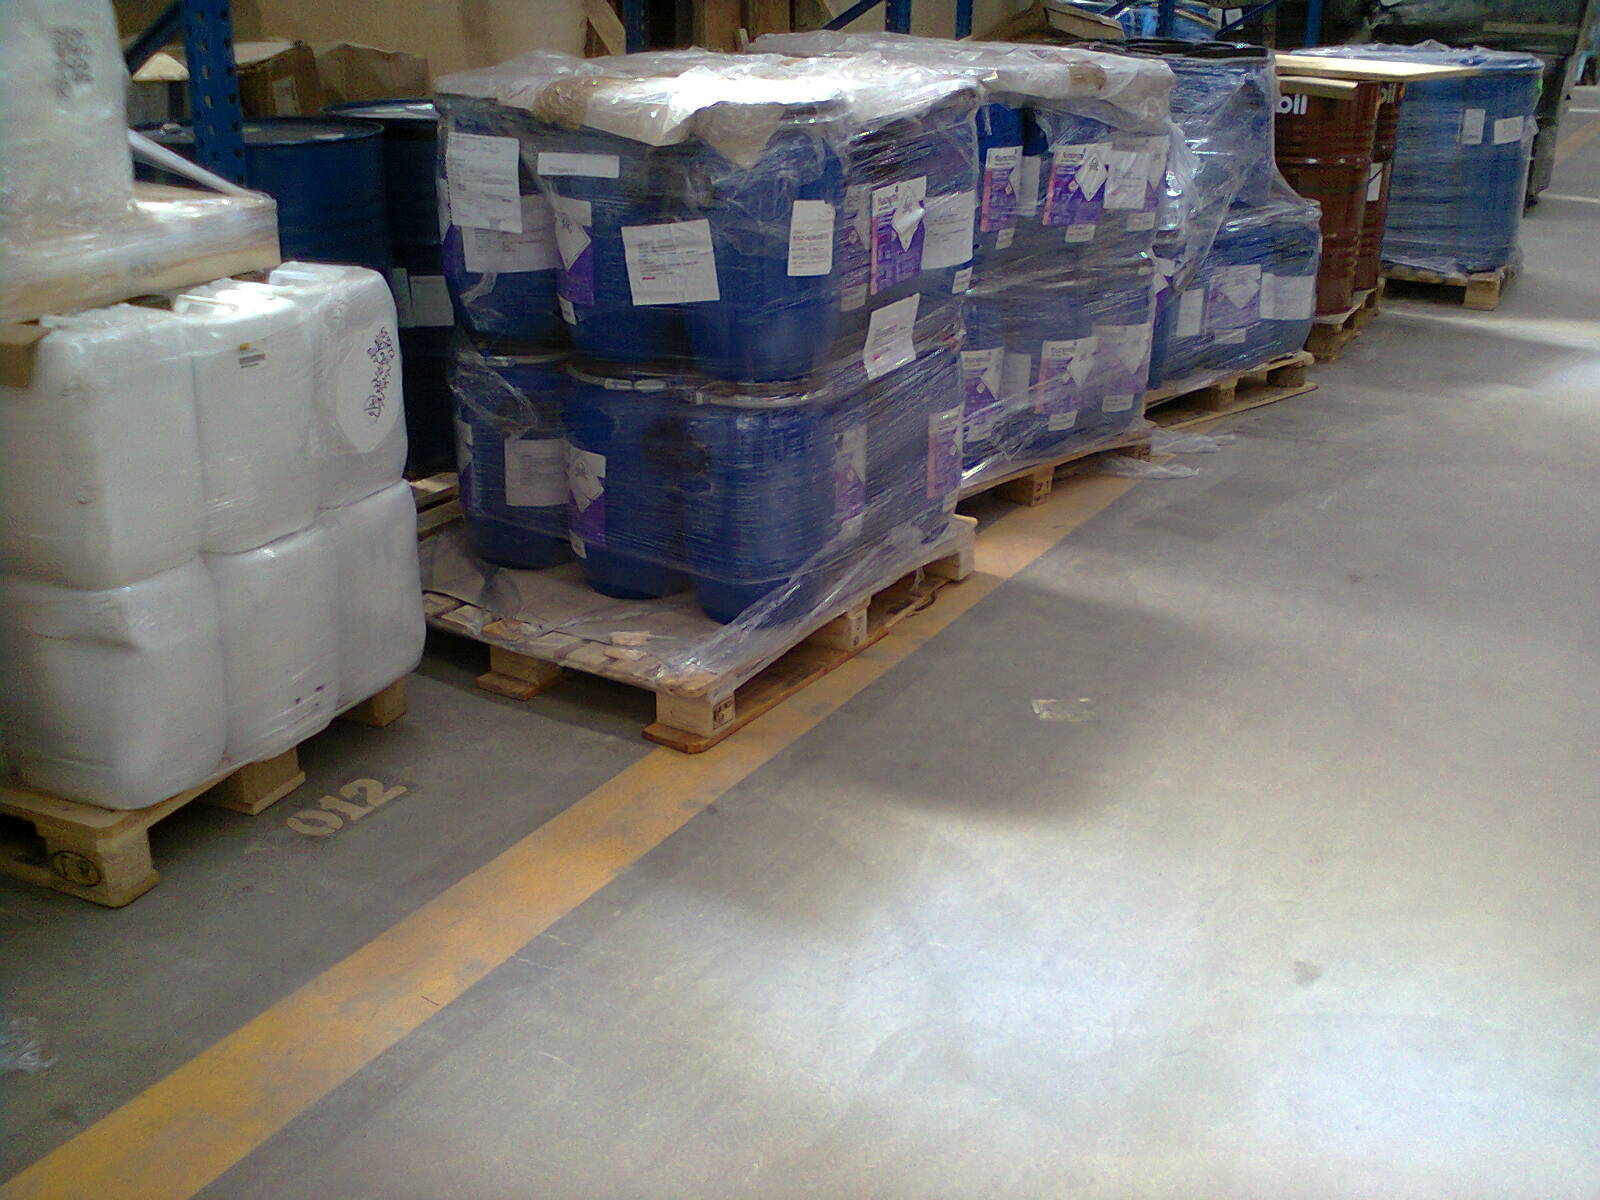 Hazardous Material Cargo Services